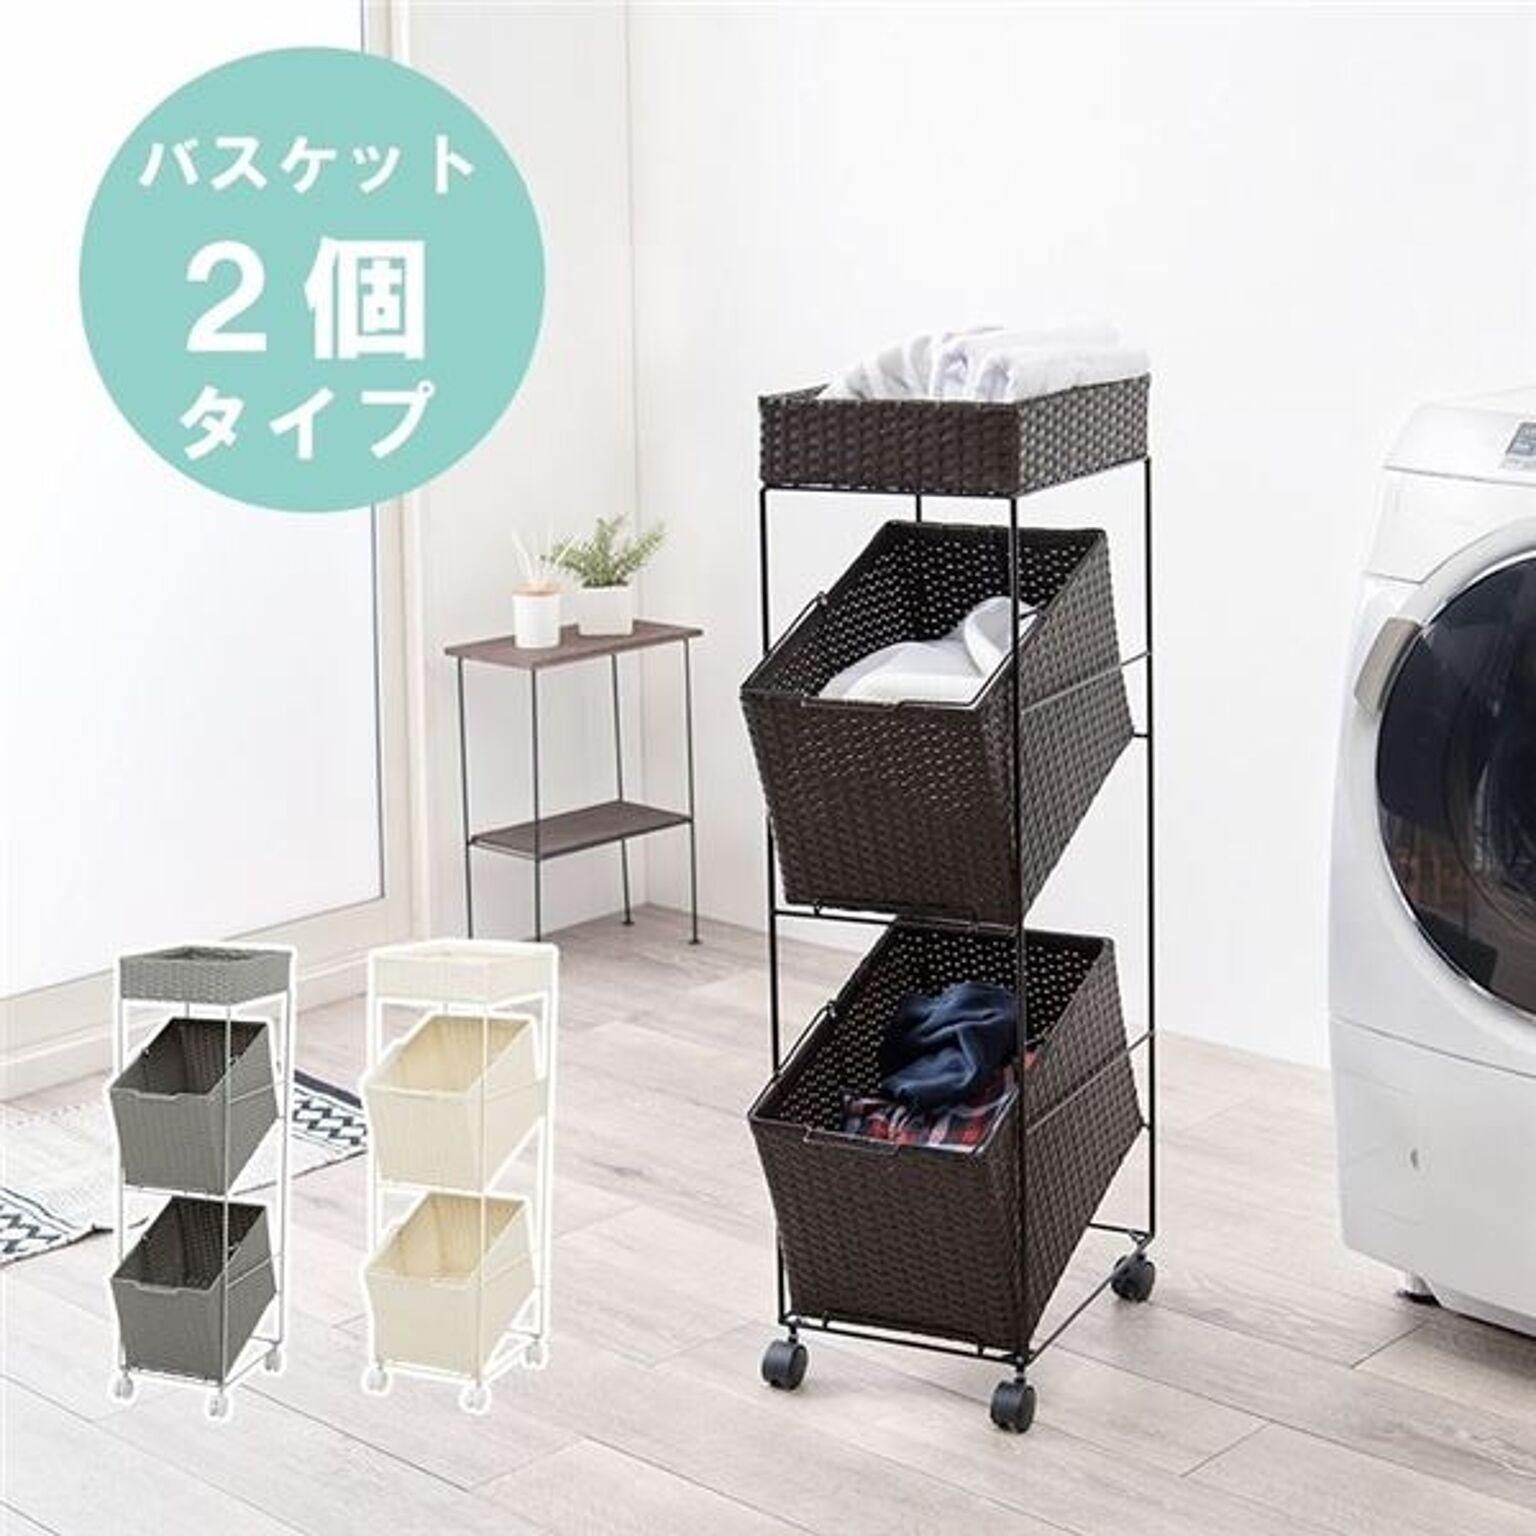 ニトリ 洗濯機ラック クルス(ピュアホワイト) 【玄関先迄納品